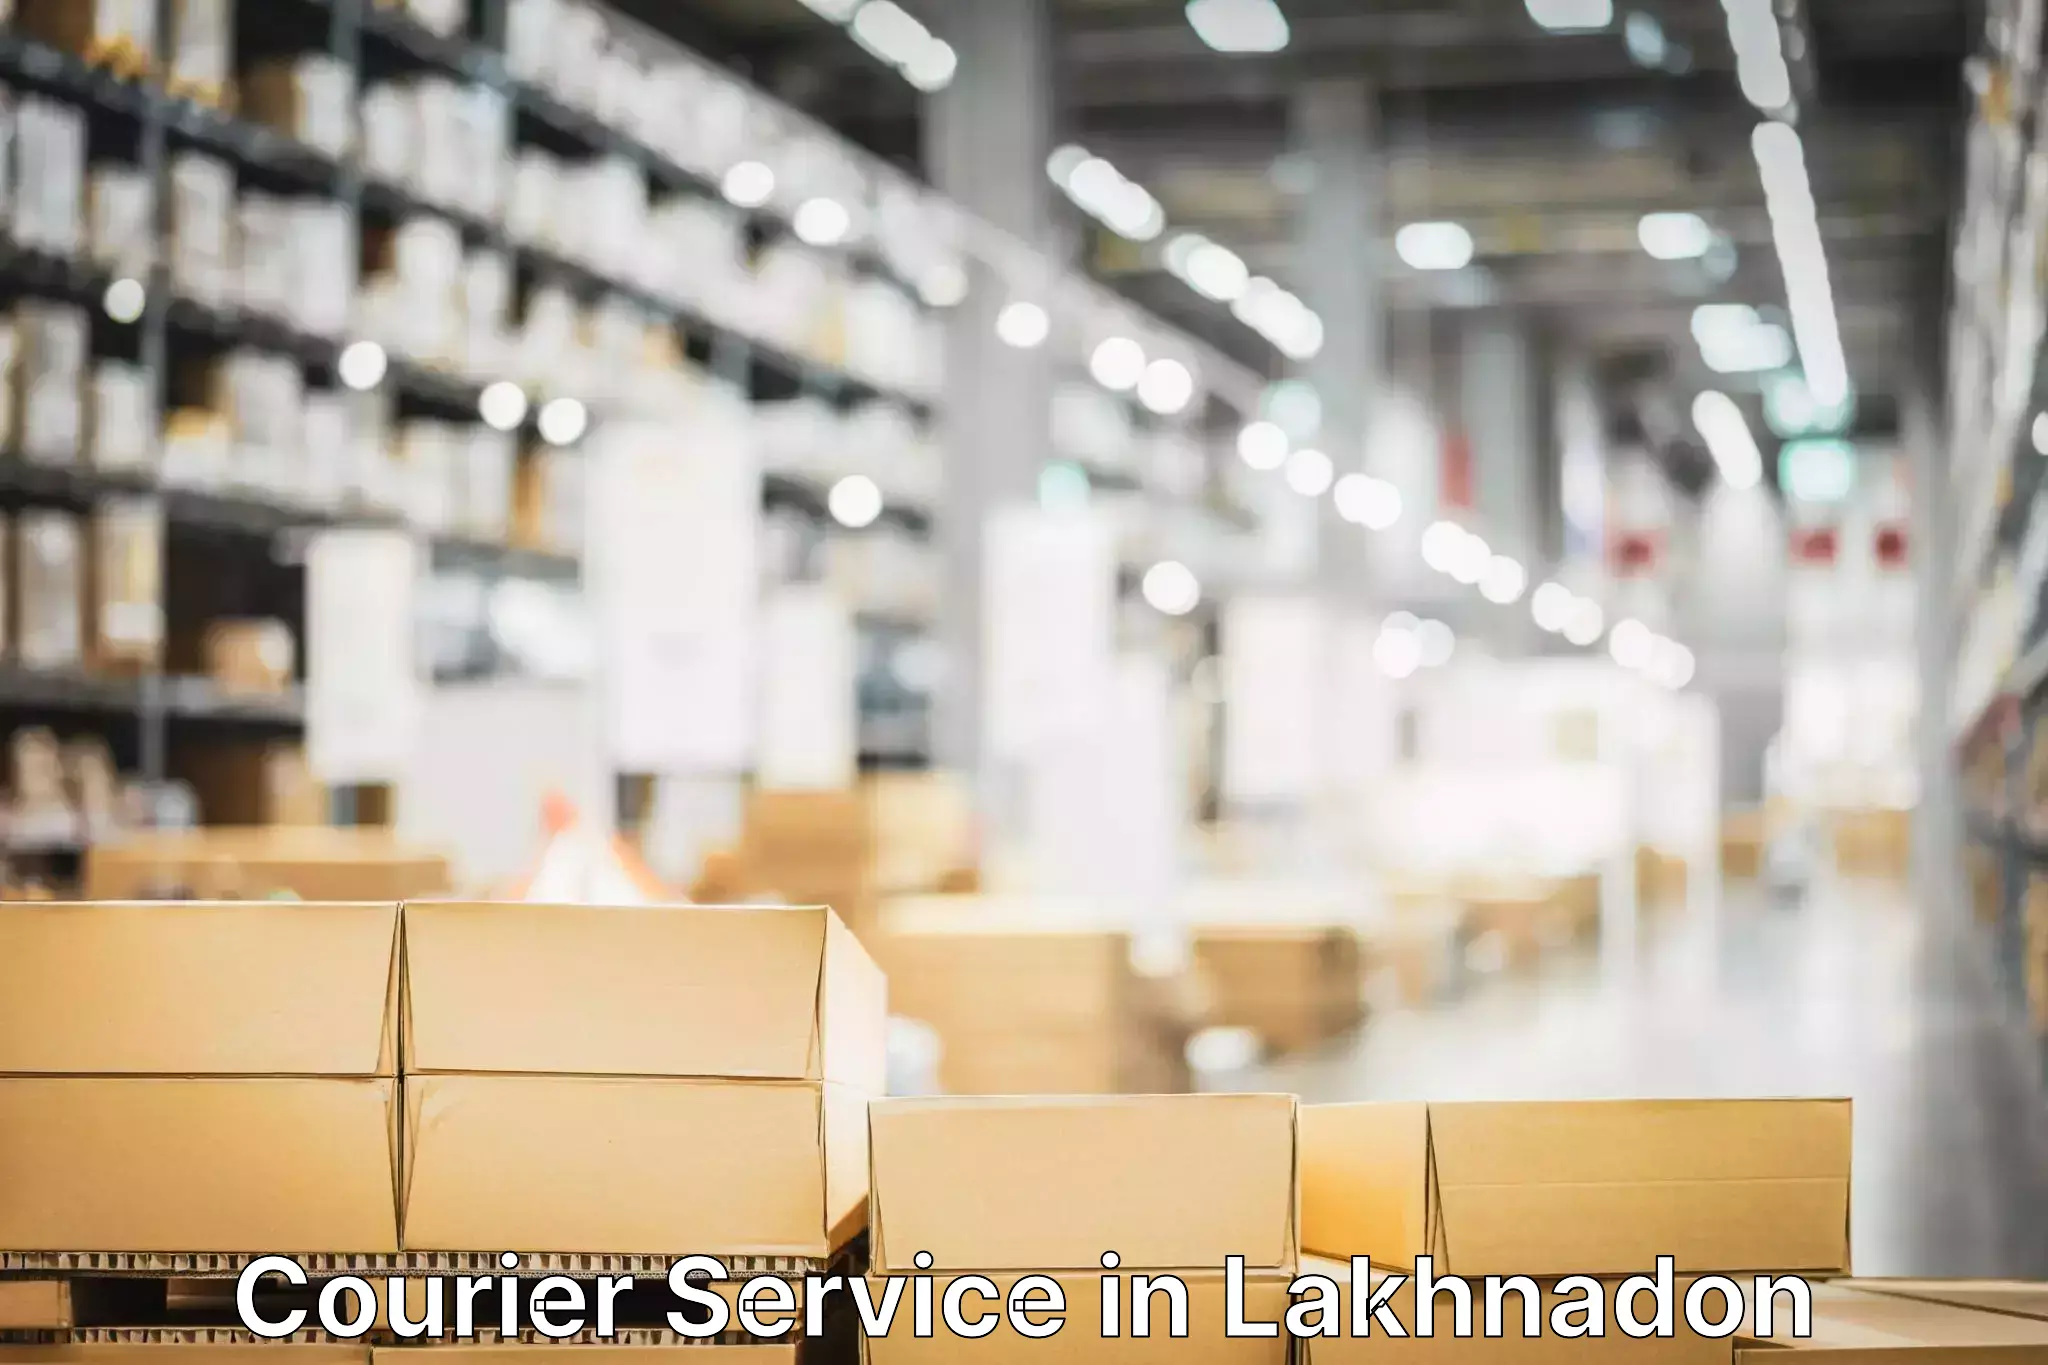 Premium delivery services in Lakhnadon